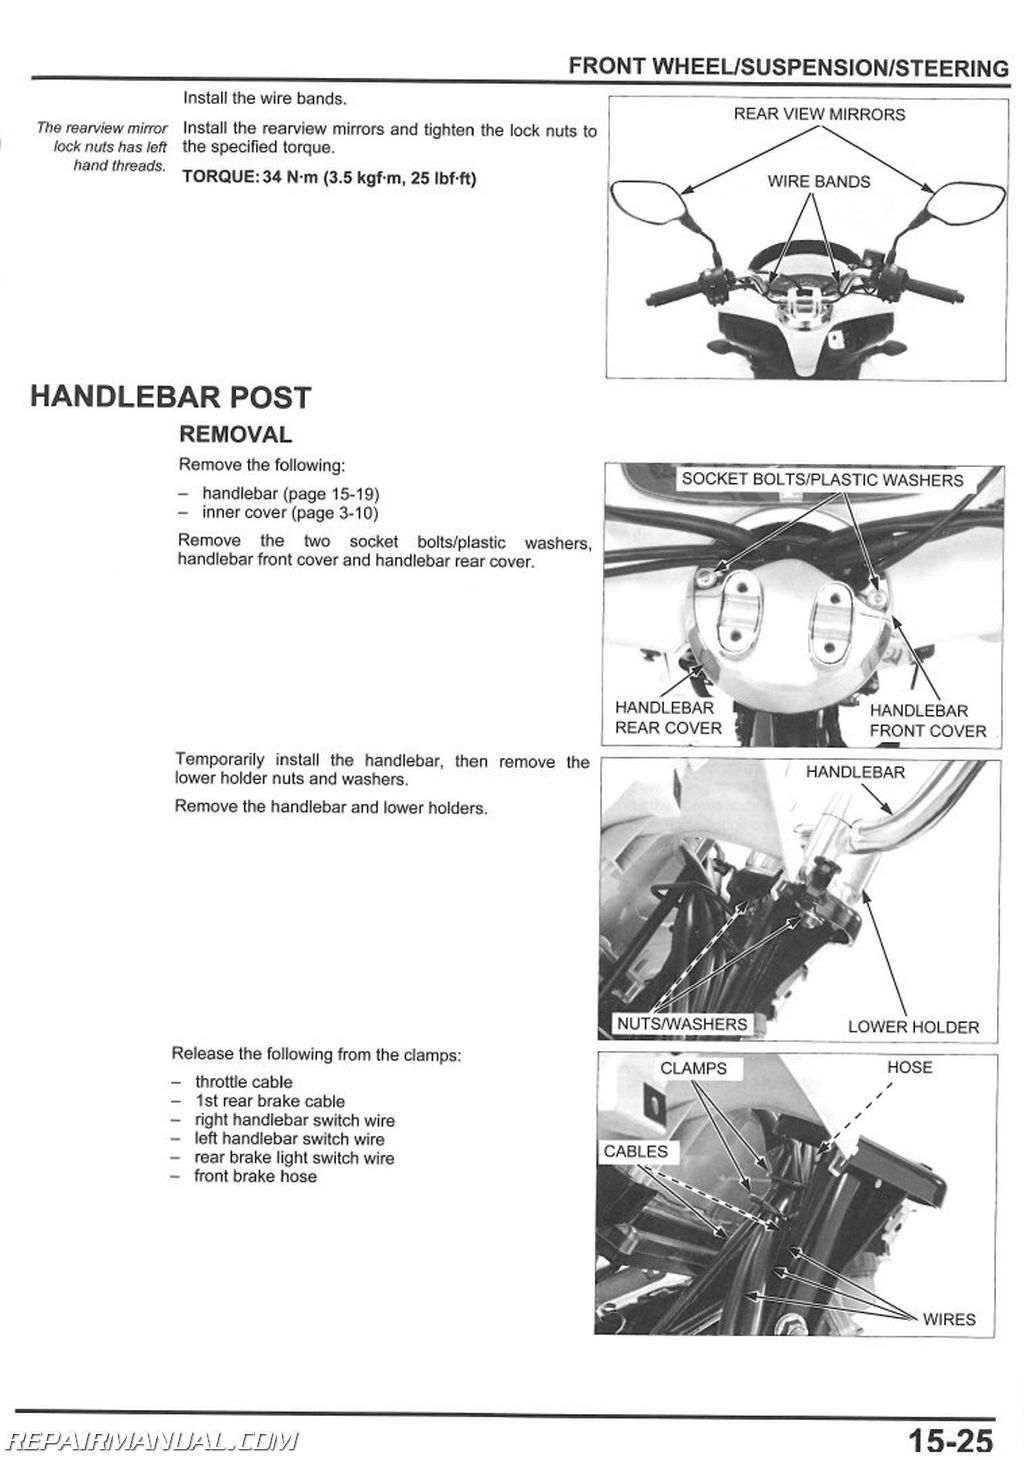 Honda moped repair manual #2